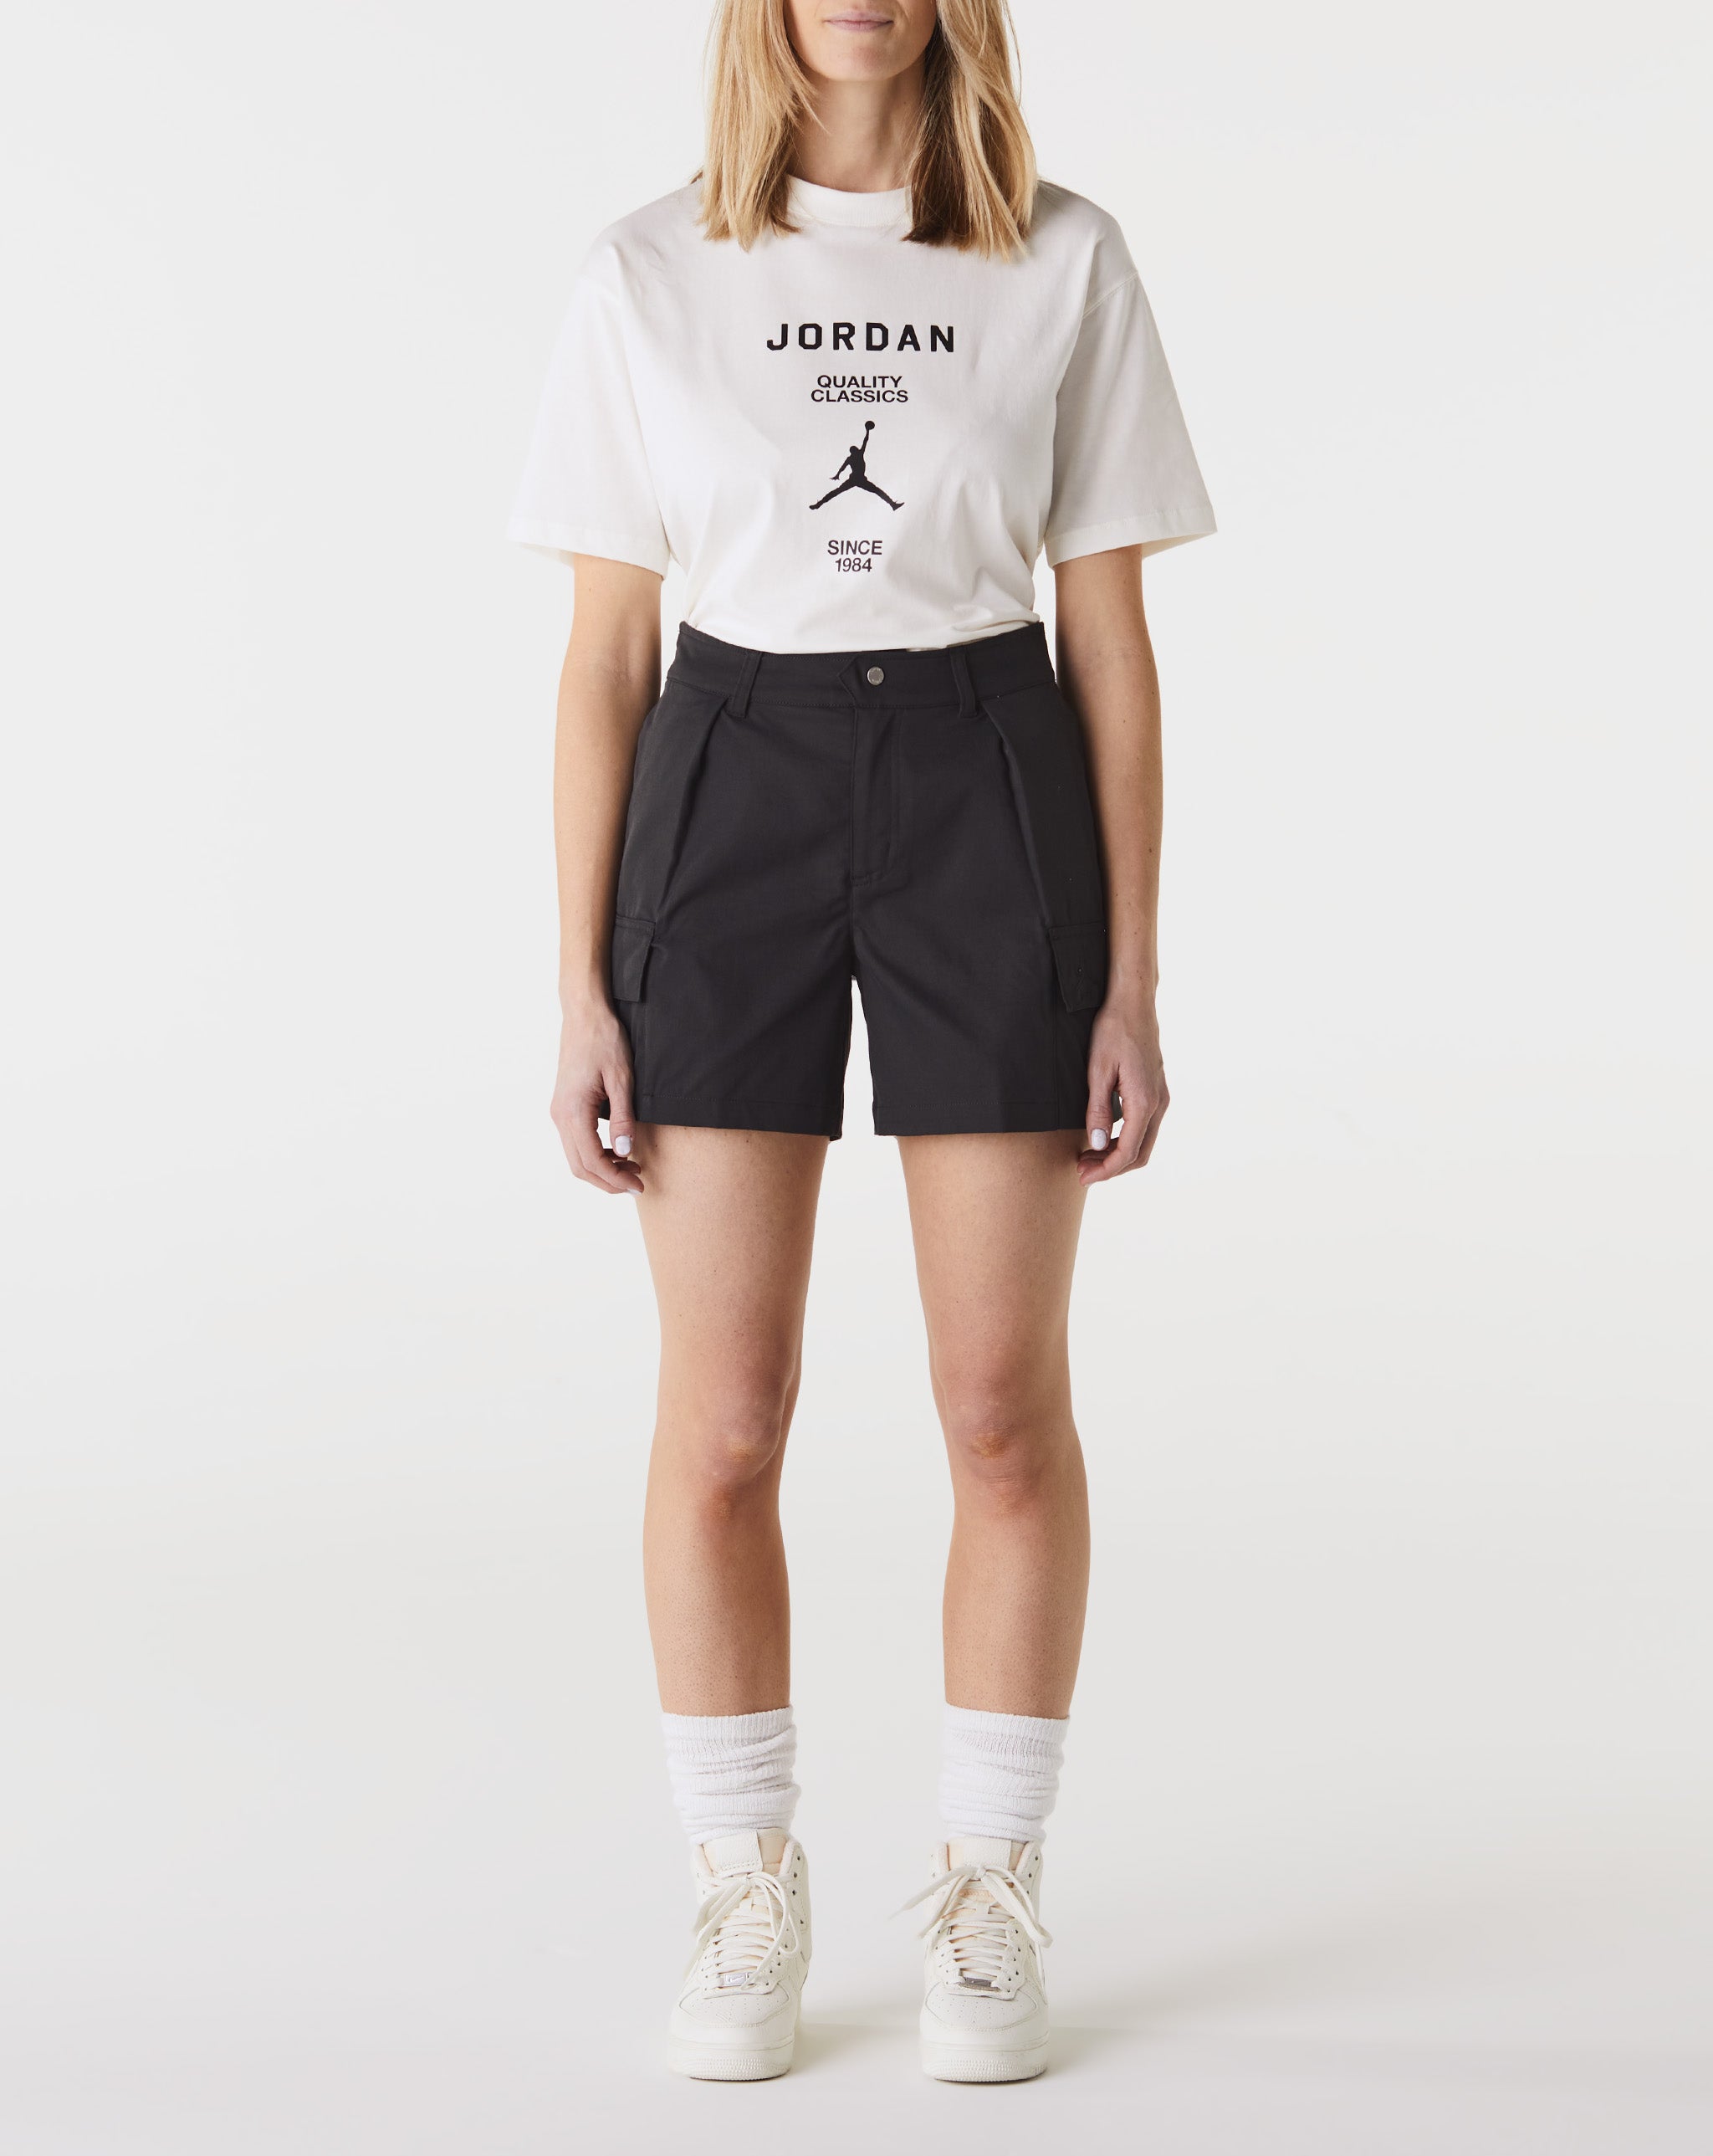 Air official jordan Women's Chicago Shorts  - Cheap Urlfreeze Jordan outlet